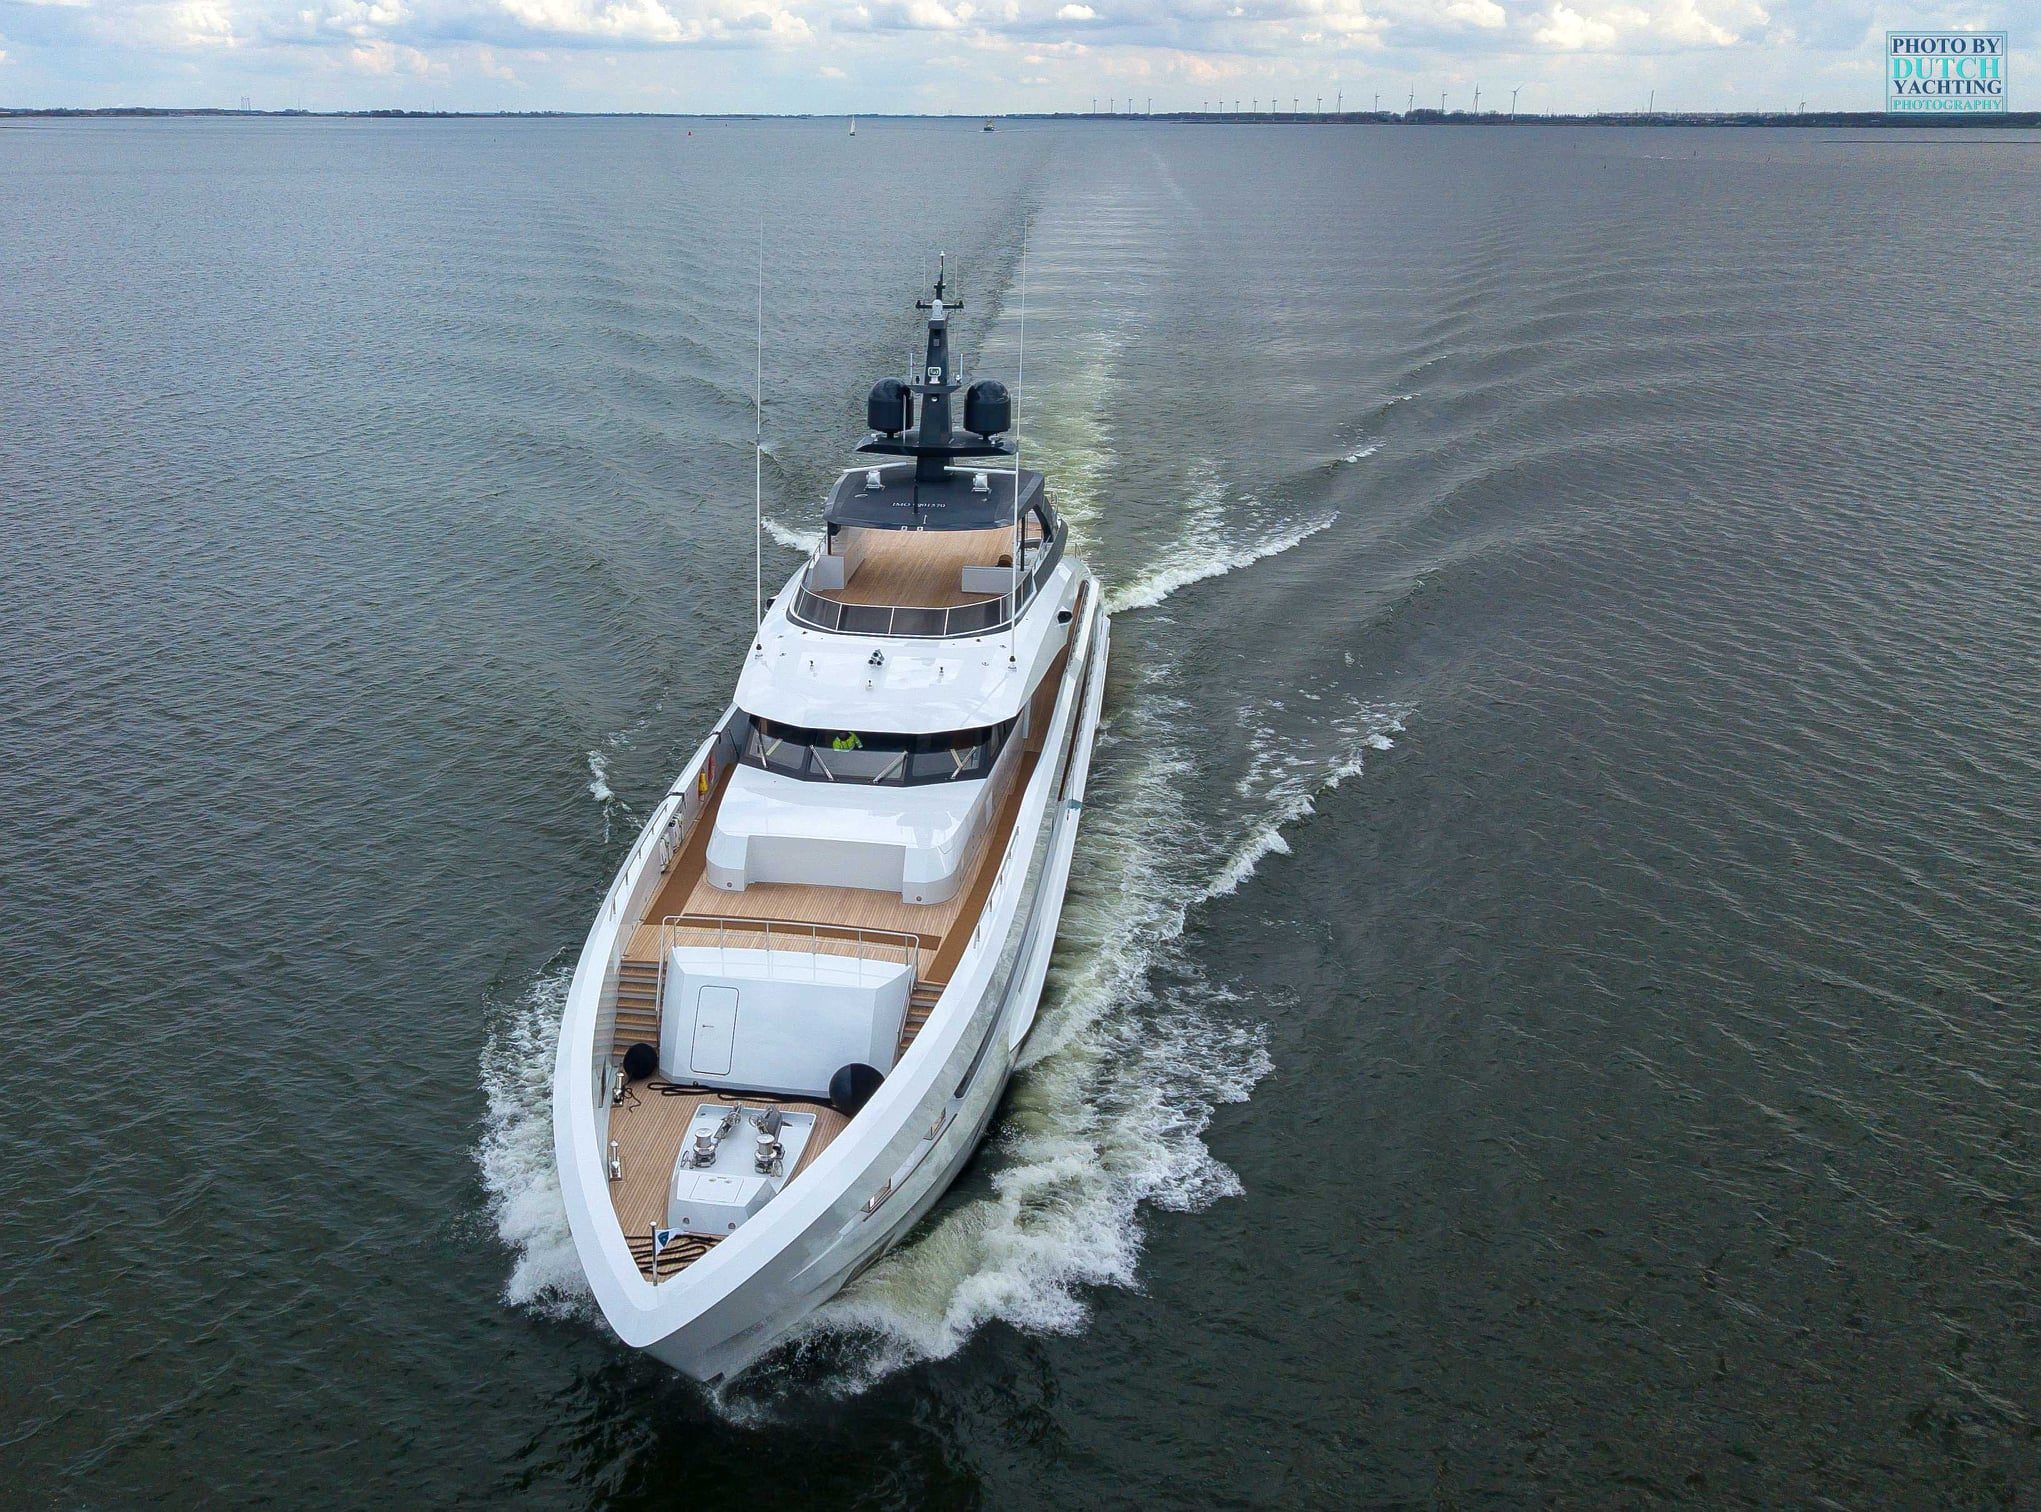 AQUAMARINE Yacht • Heesen Yachts • 2021 • Owner David Davidovich